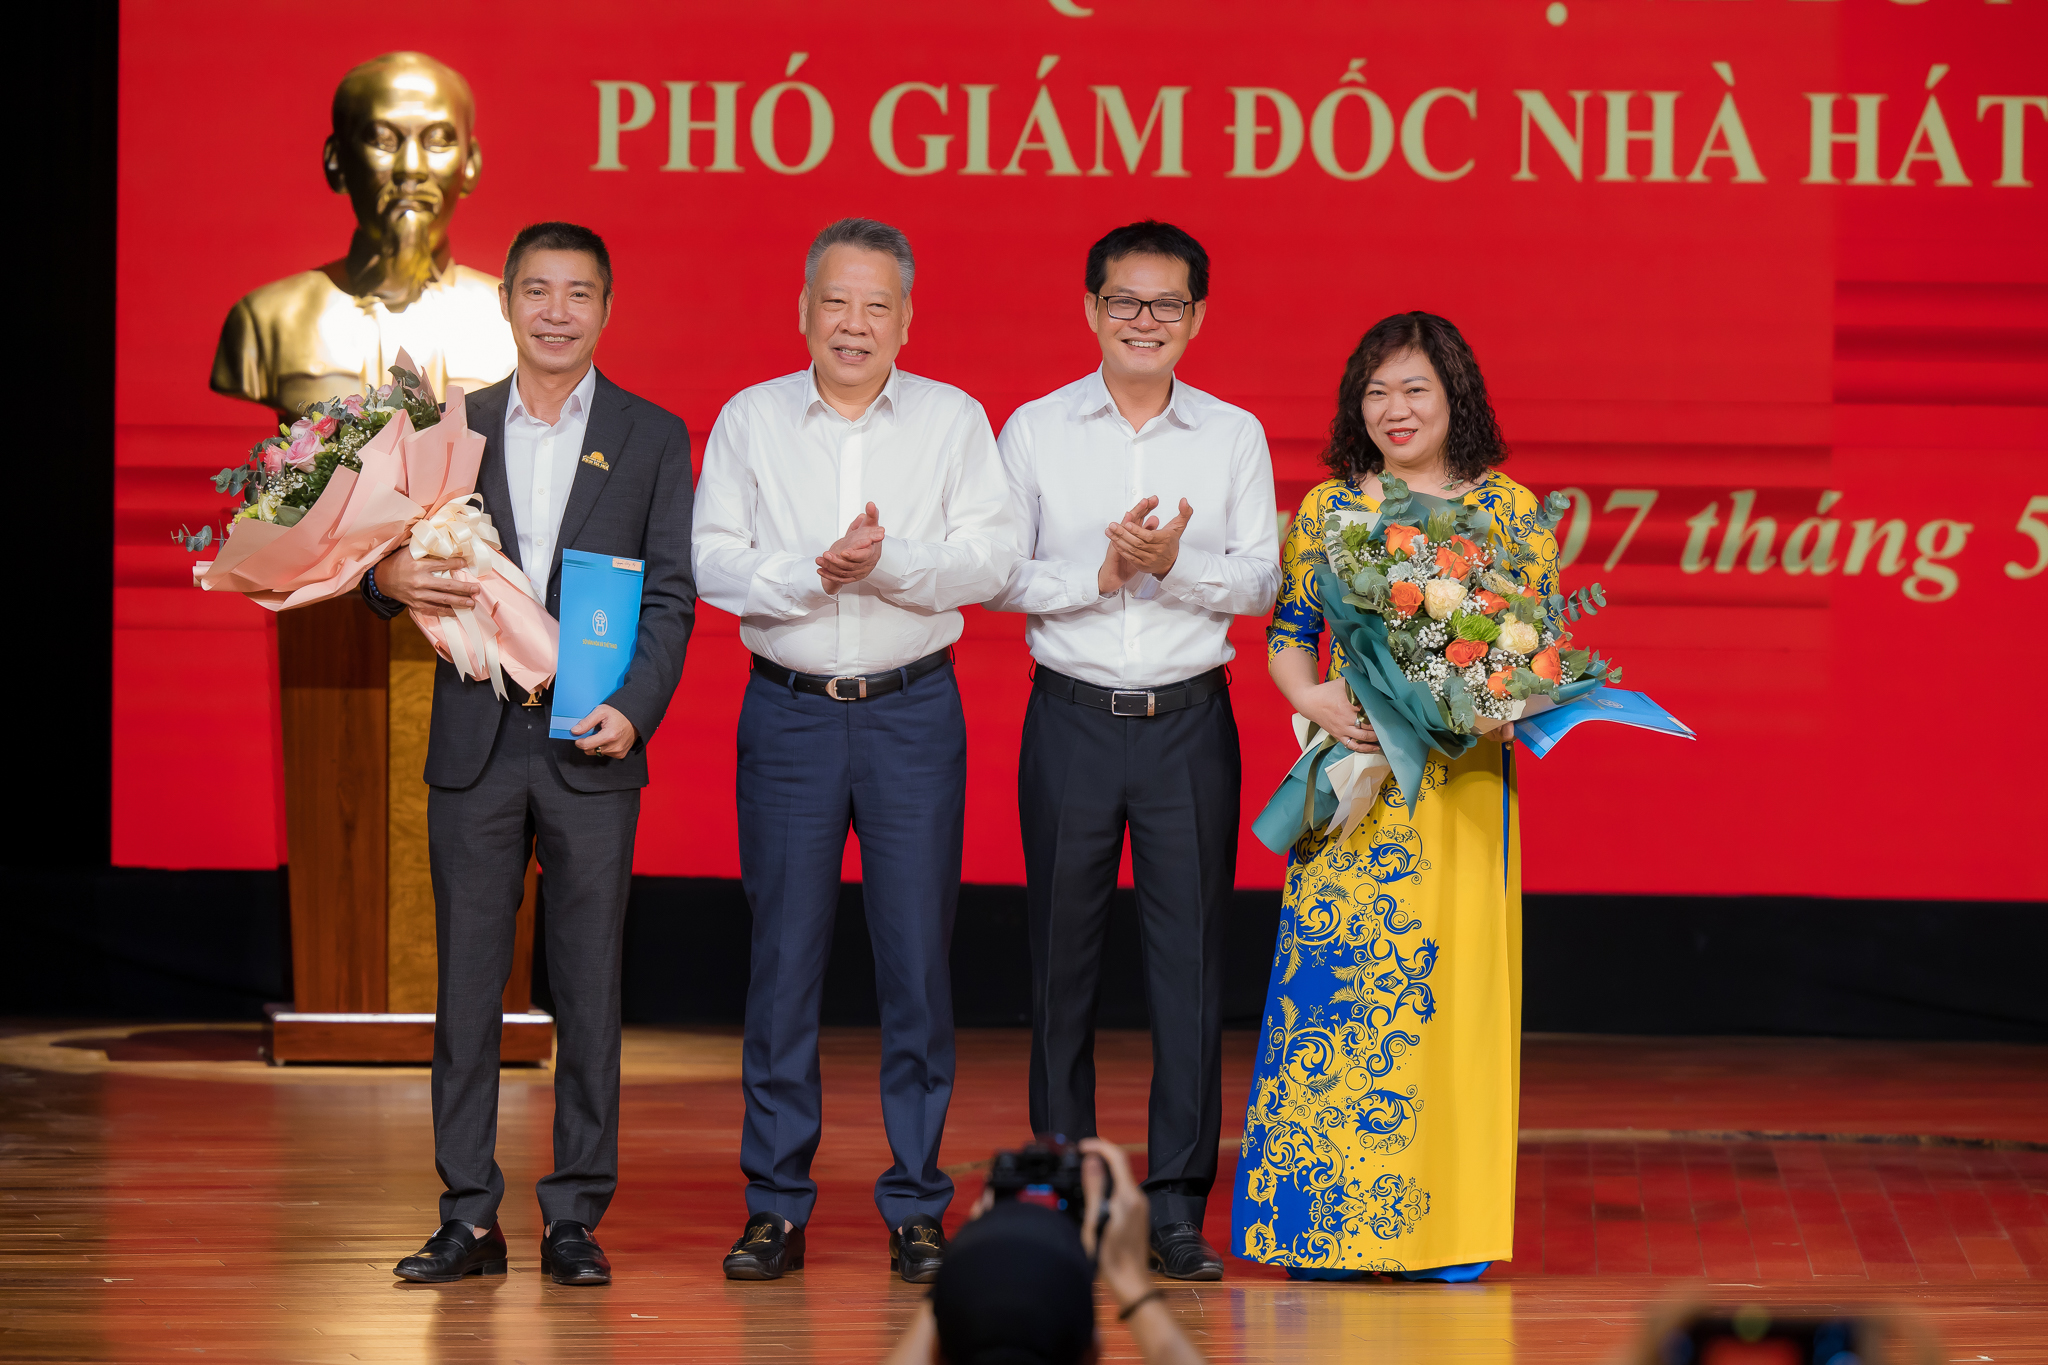 NSND Công Lý nhận quyết định bổ nhiệm chức vụ Phó Giám đốc Nhà hát kịch Hà Nội